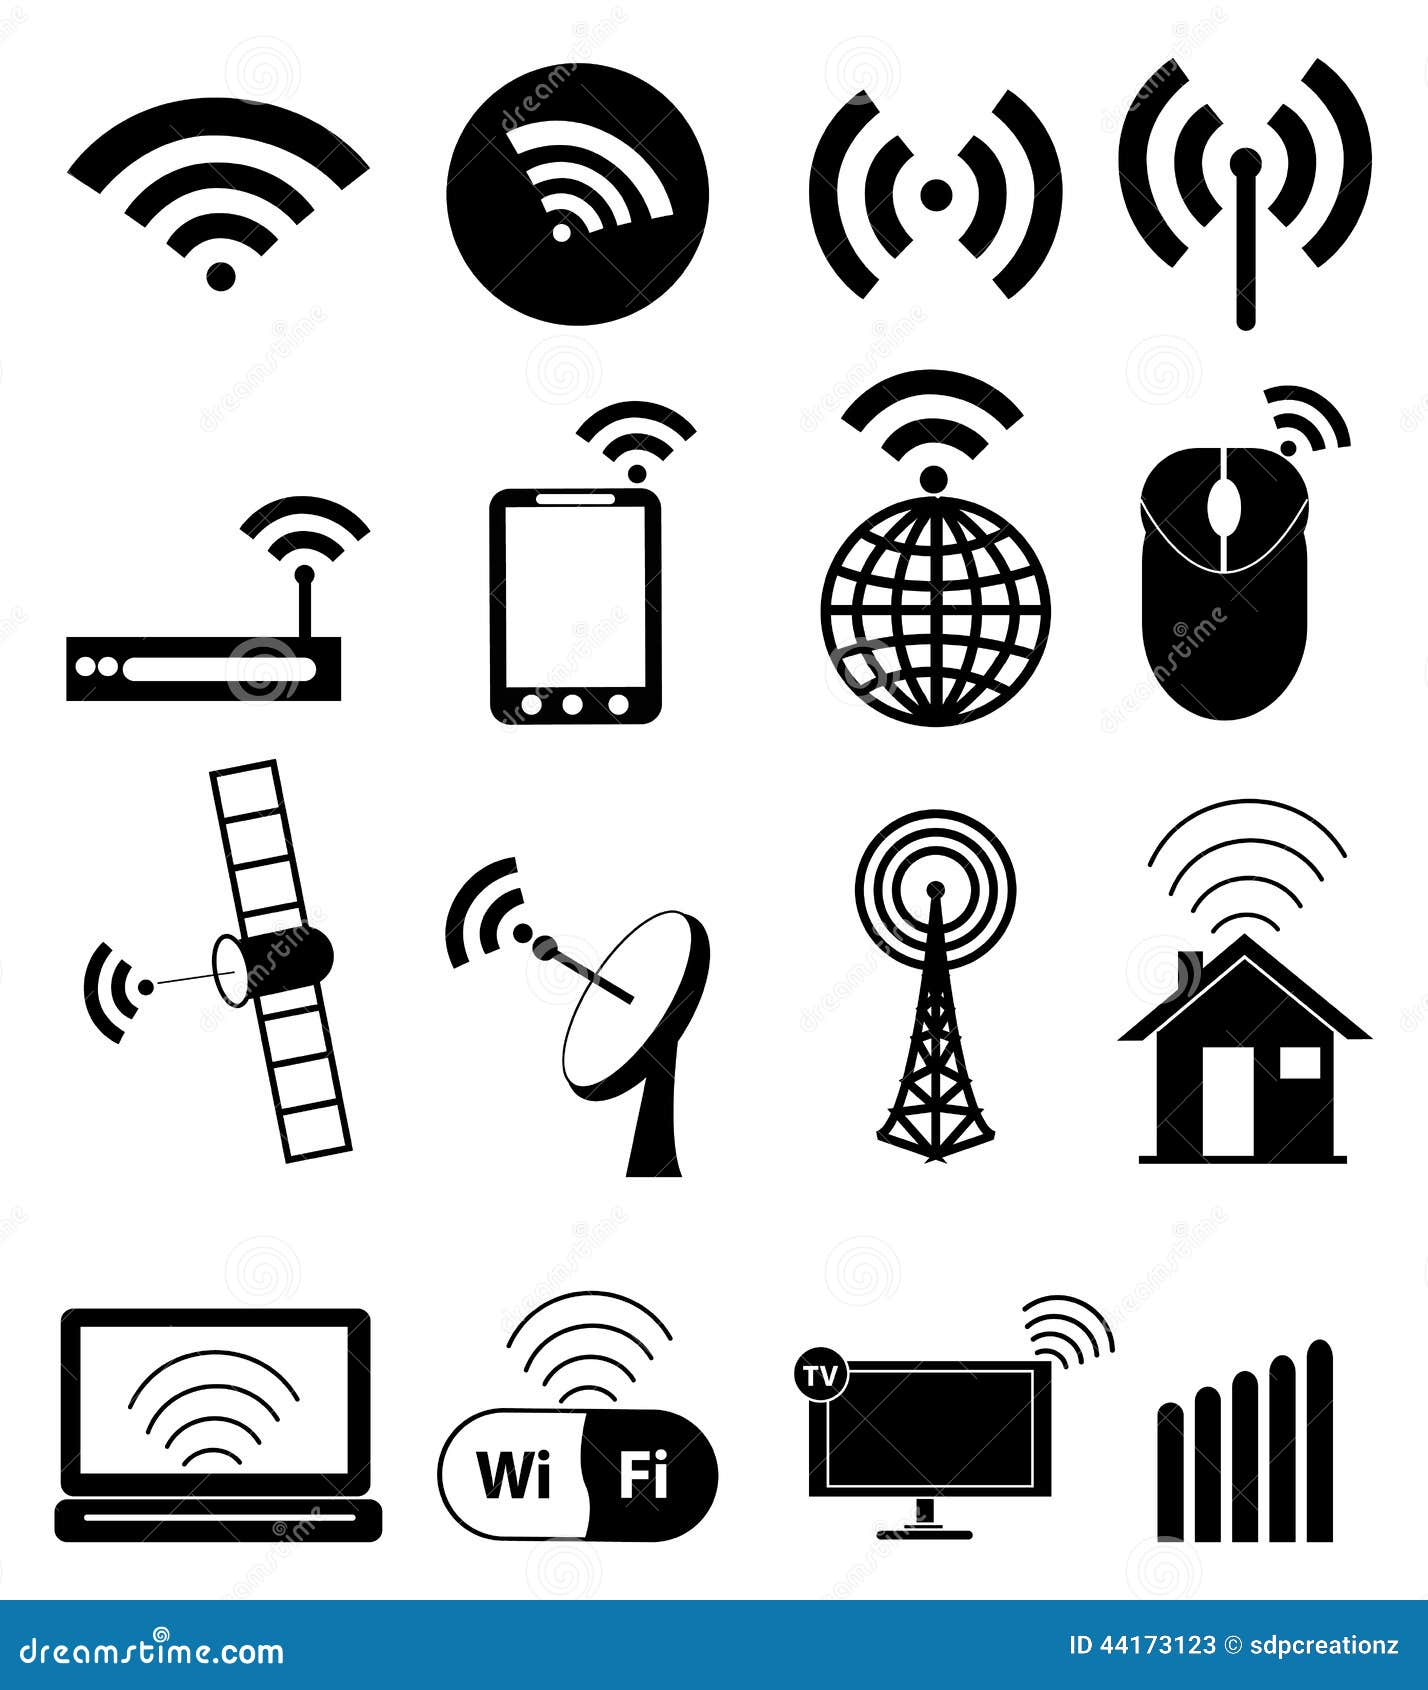 wifi icons set